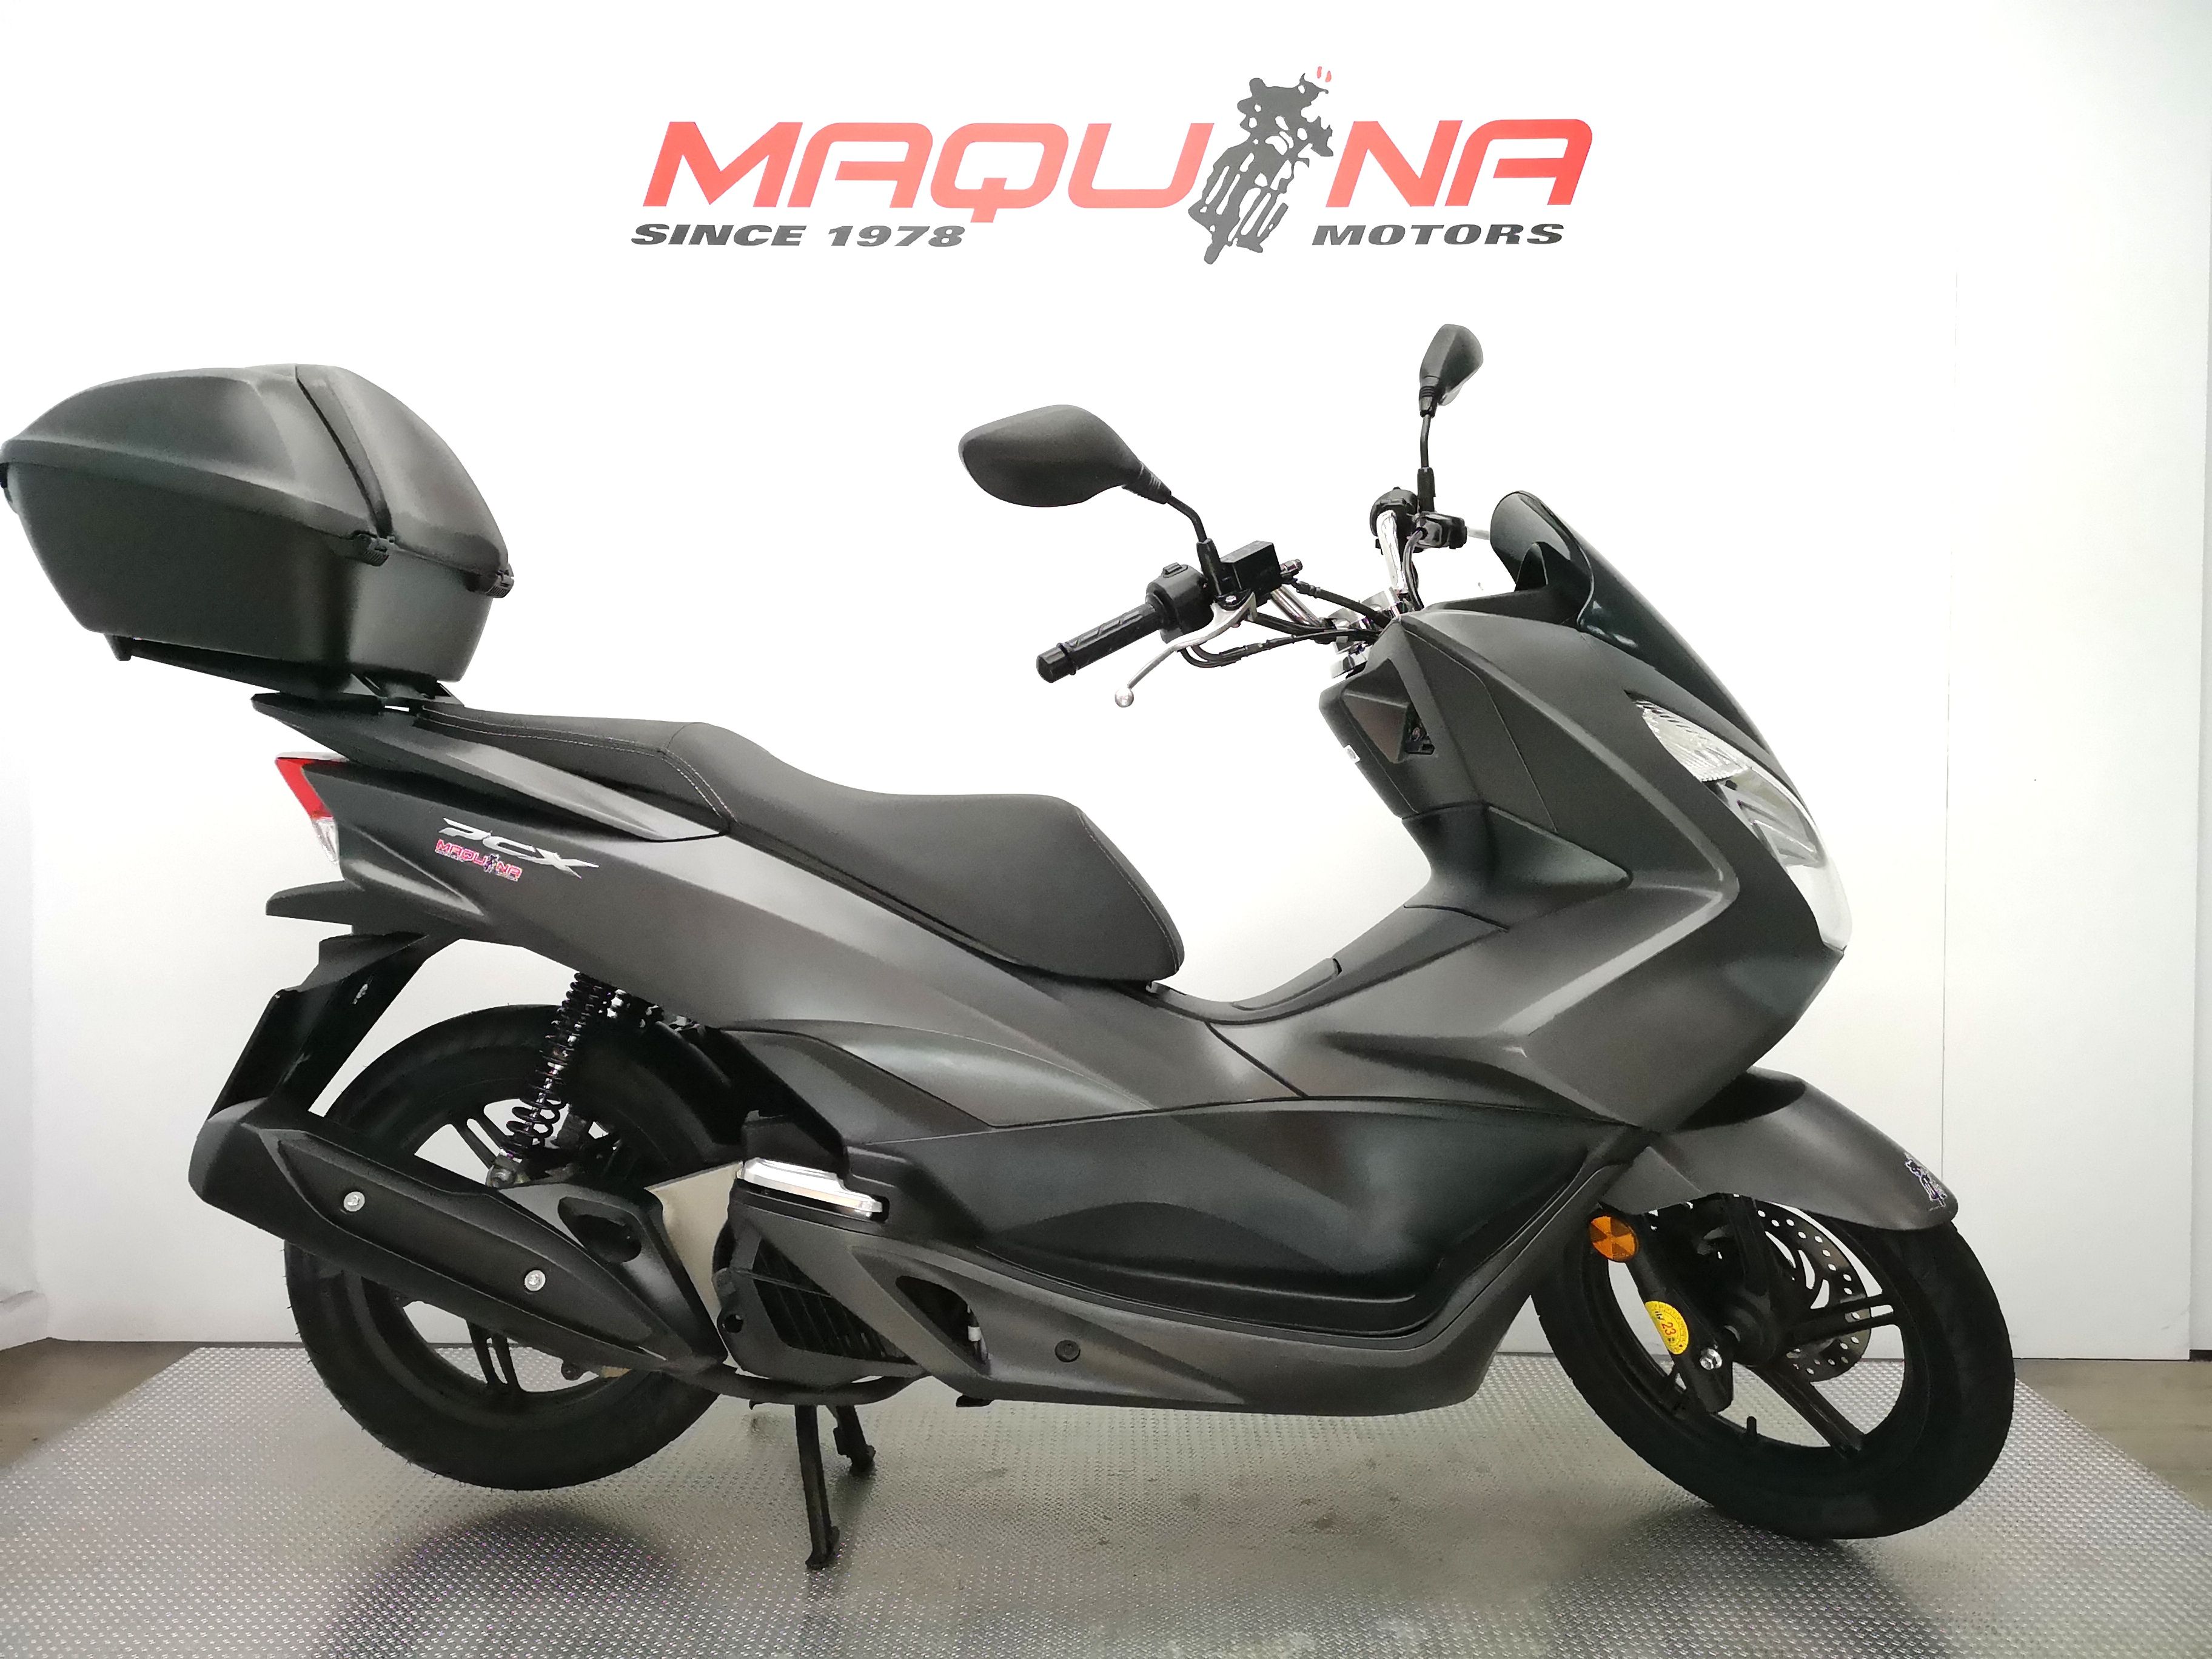 HONDA PCX 125 Maquina Motors motos ocasión